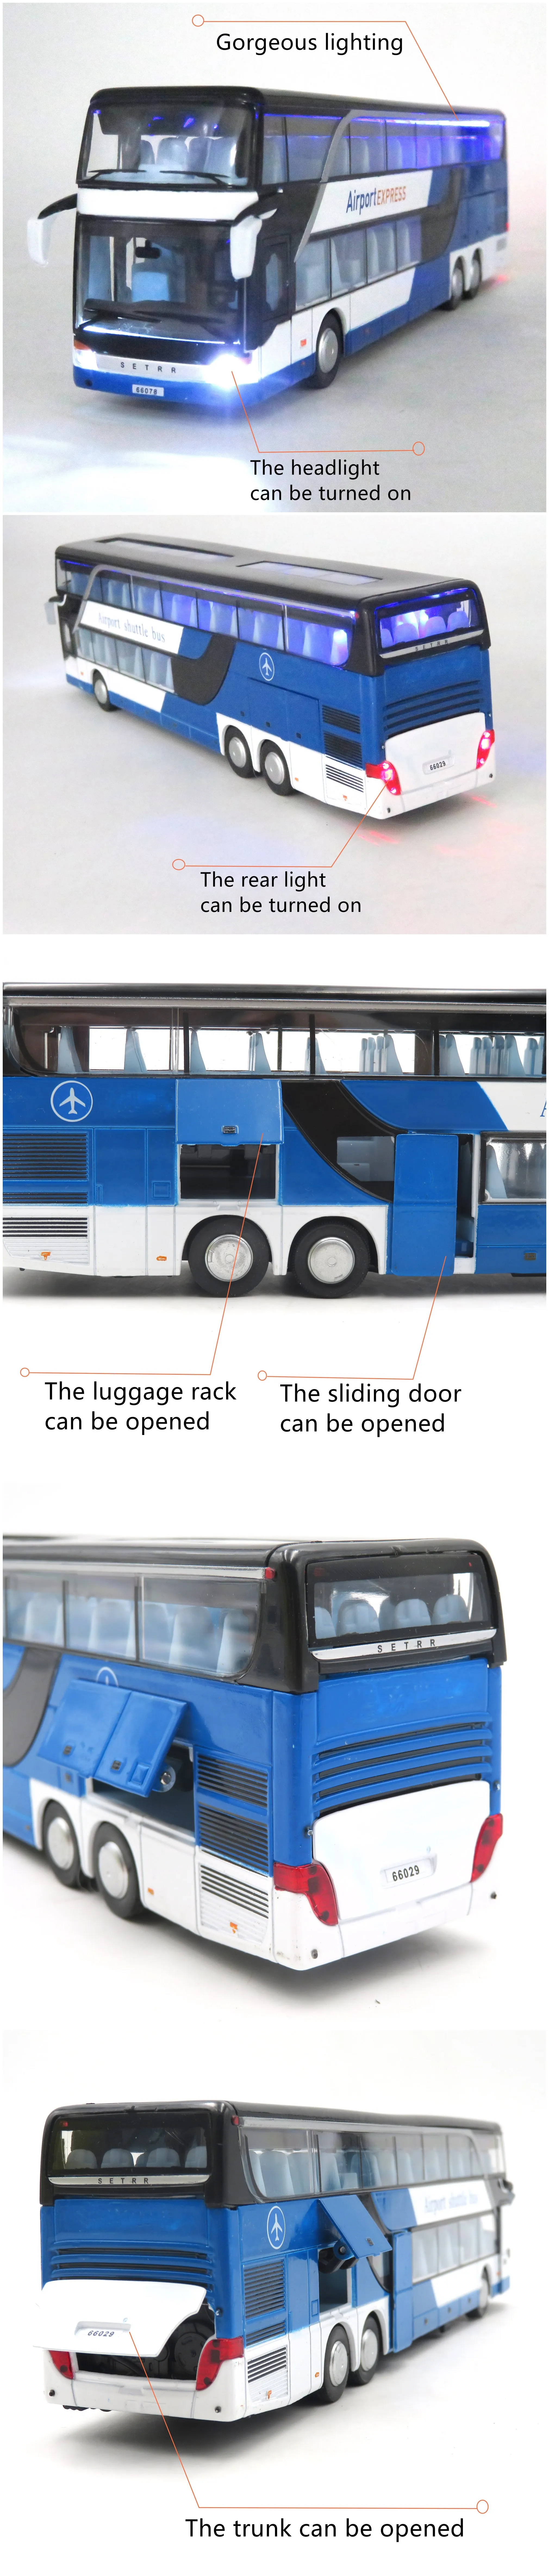 Modèle shuttle bus jouet